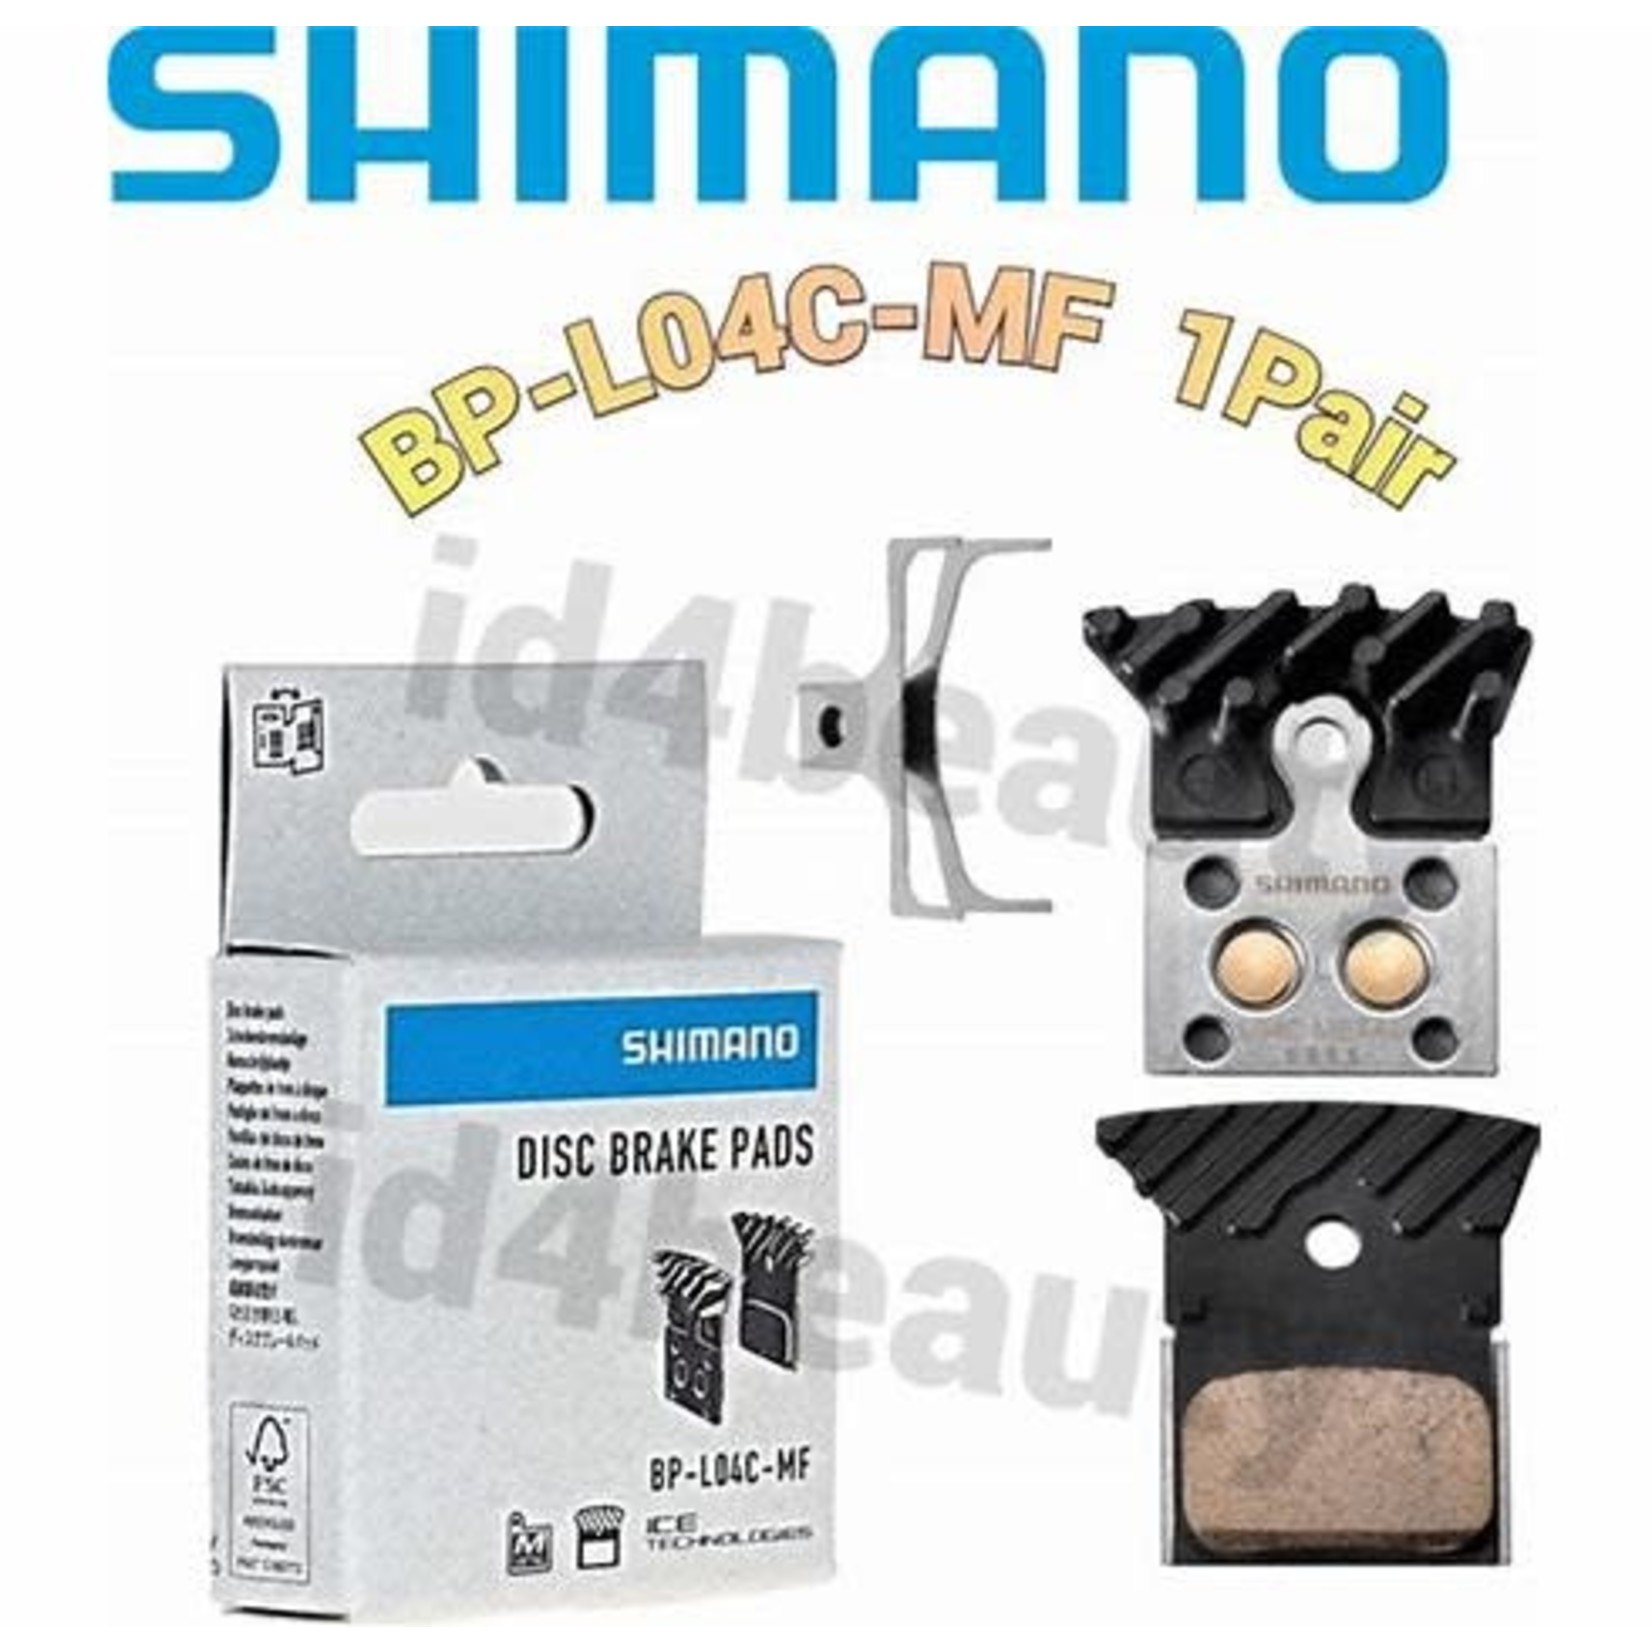 SHIMANO BRBX L04C metal pad&spg al/ss back w/fin